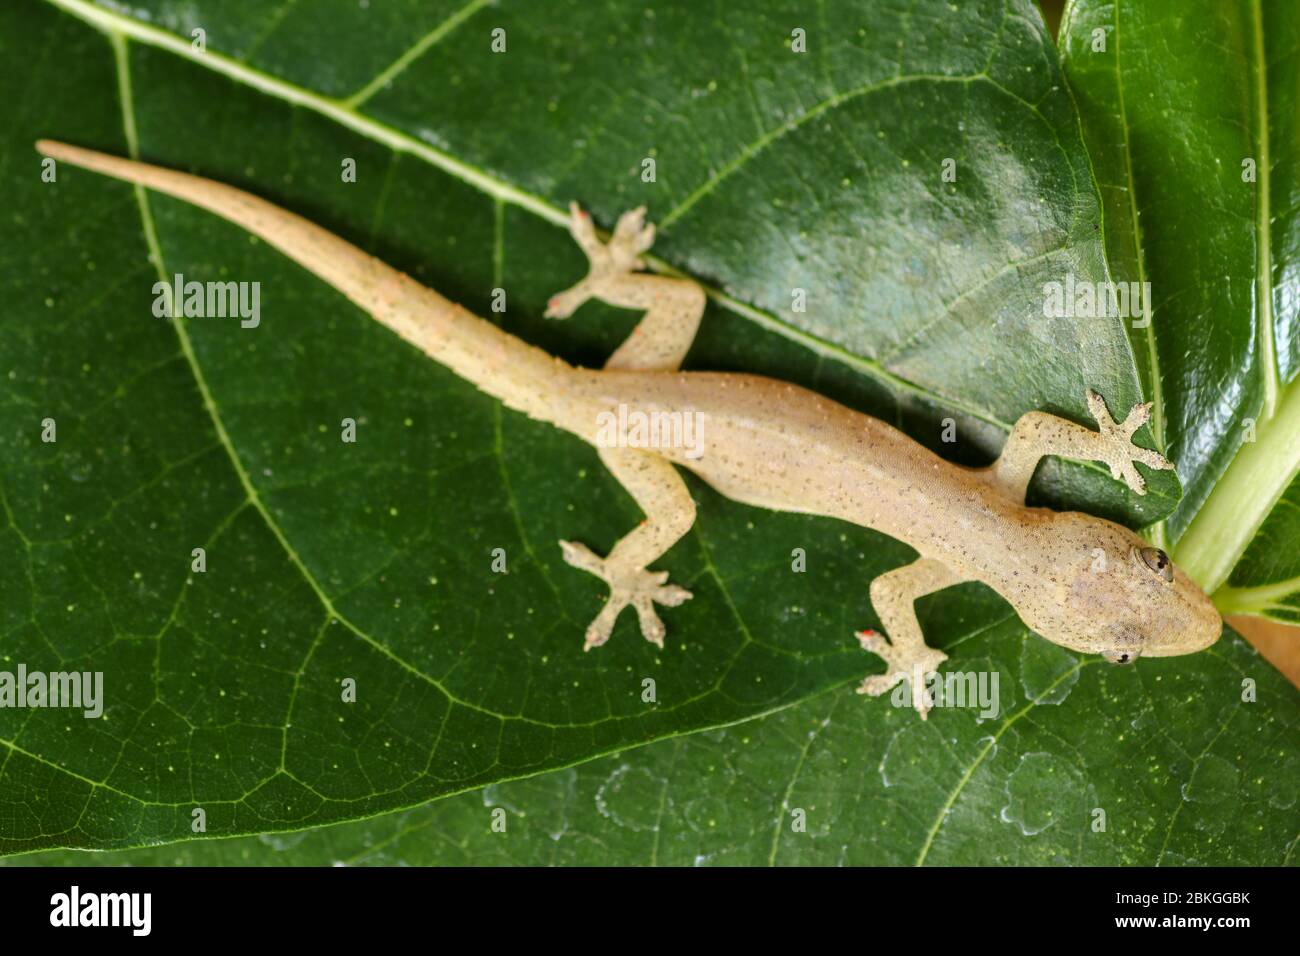 Asiatique ou maison commune Gecko Hemidactylus frenatus se trouve sur des feuilles vertes. Hemidactylus frenatus culine une plante tropicale. Gecko mur, Lizard maison. Banque D'Images